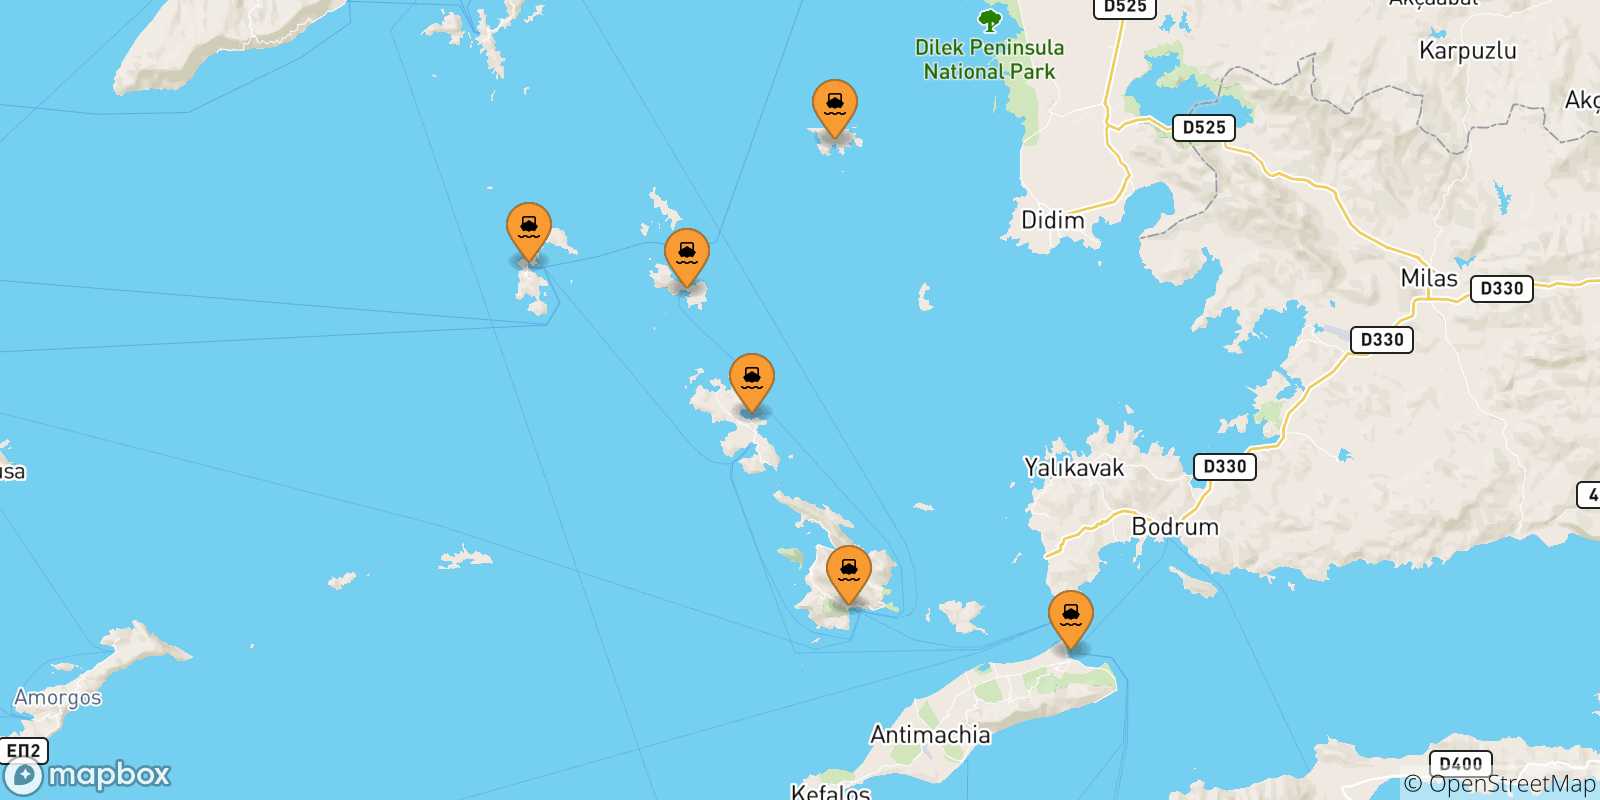 Mappa delle possibili rotte tra le Isole Dodecaneso e Arkyi